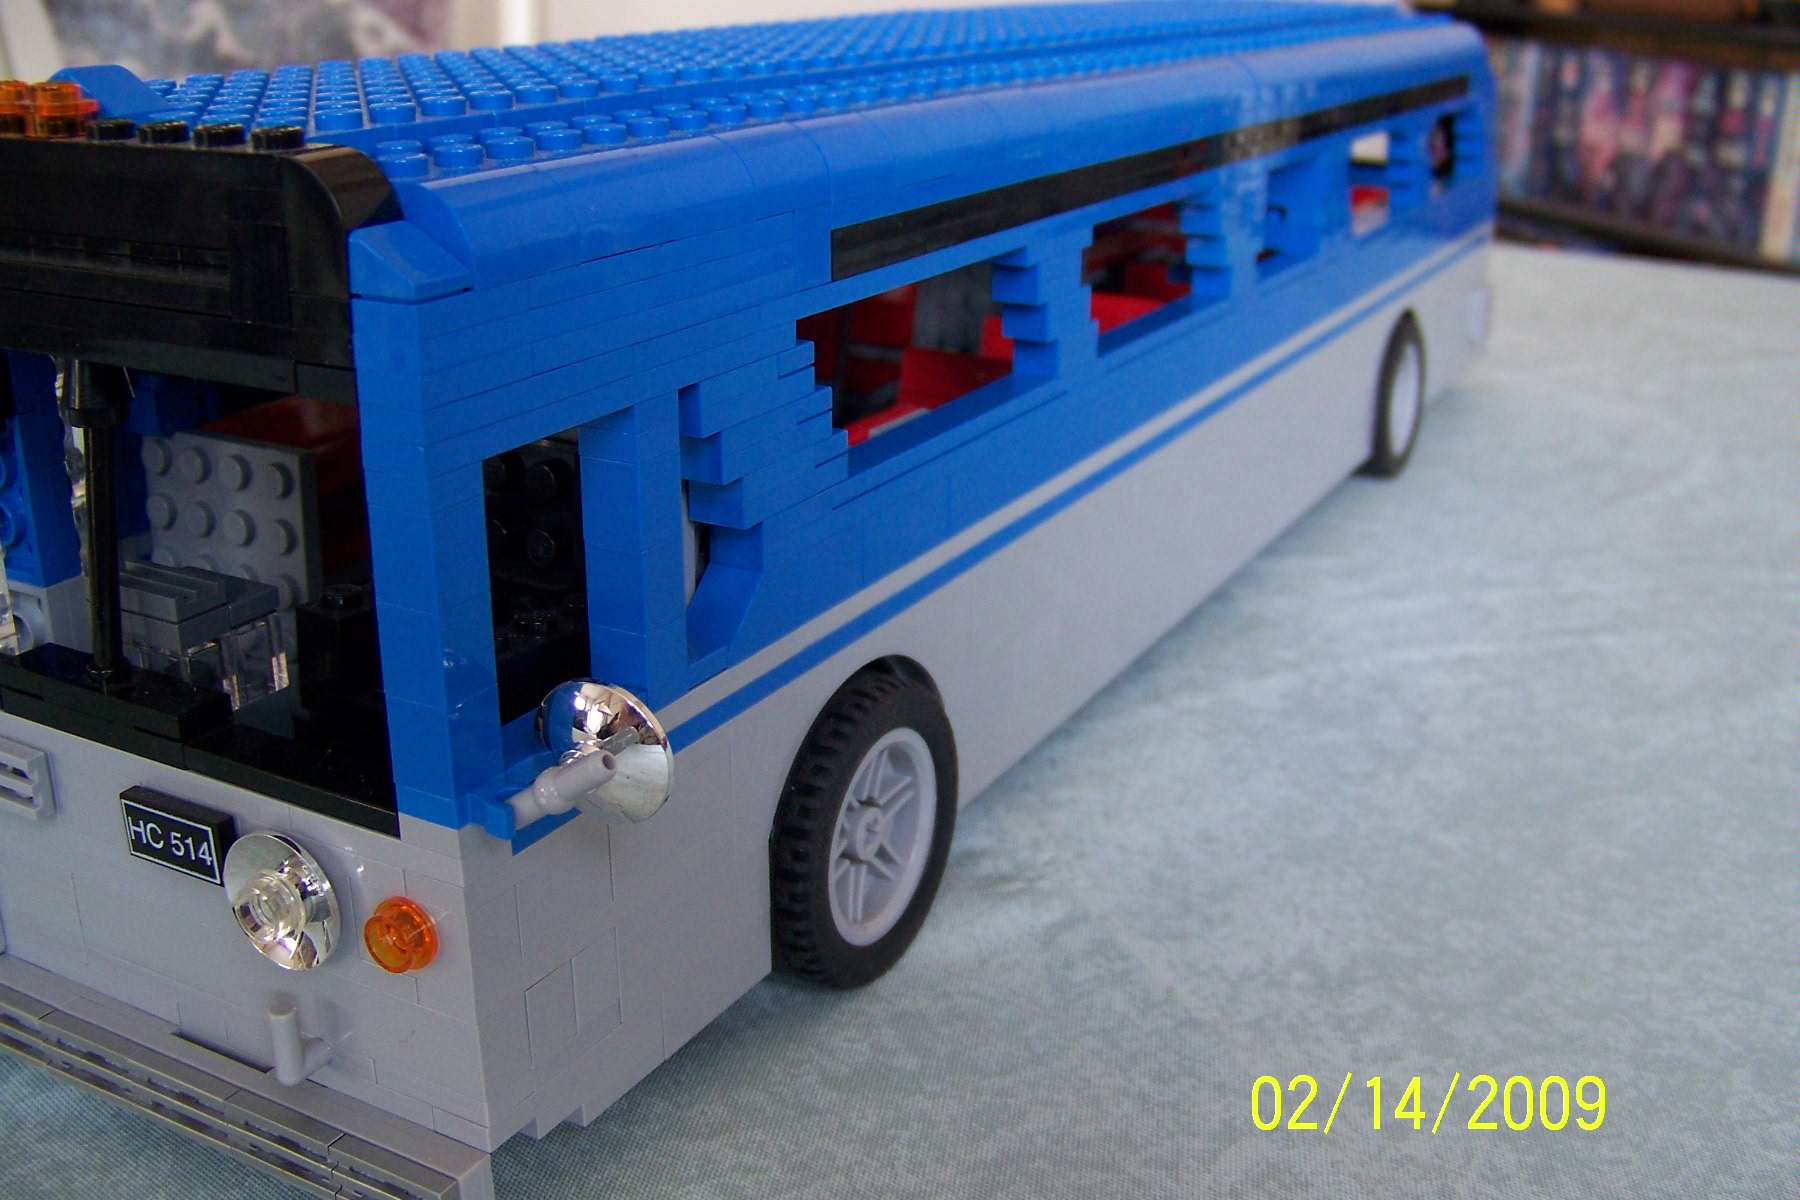 lego blue bus